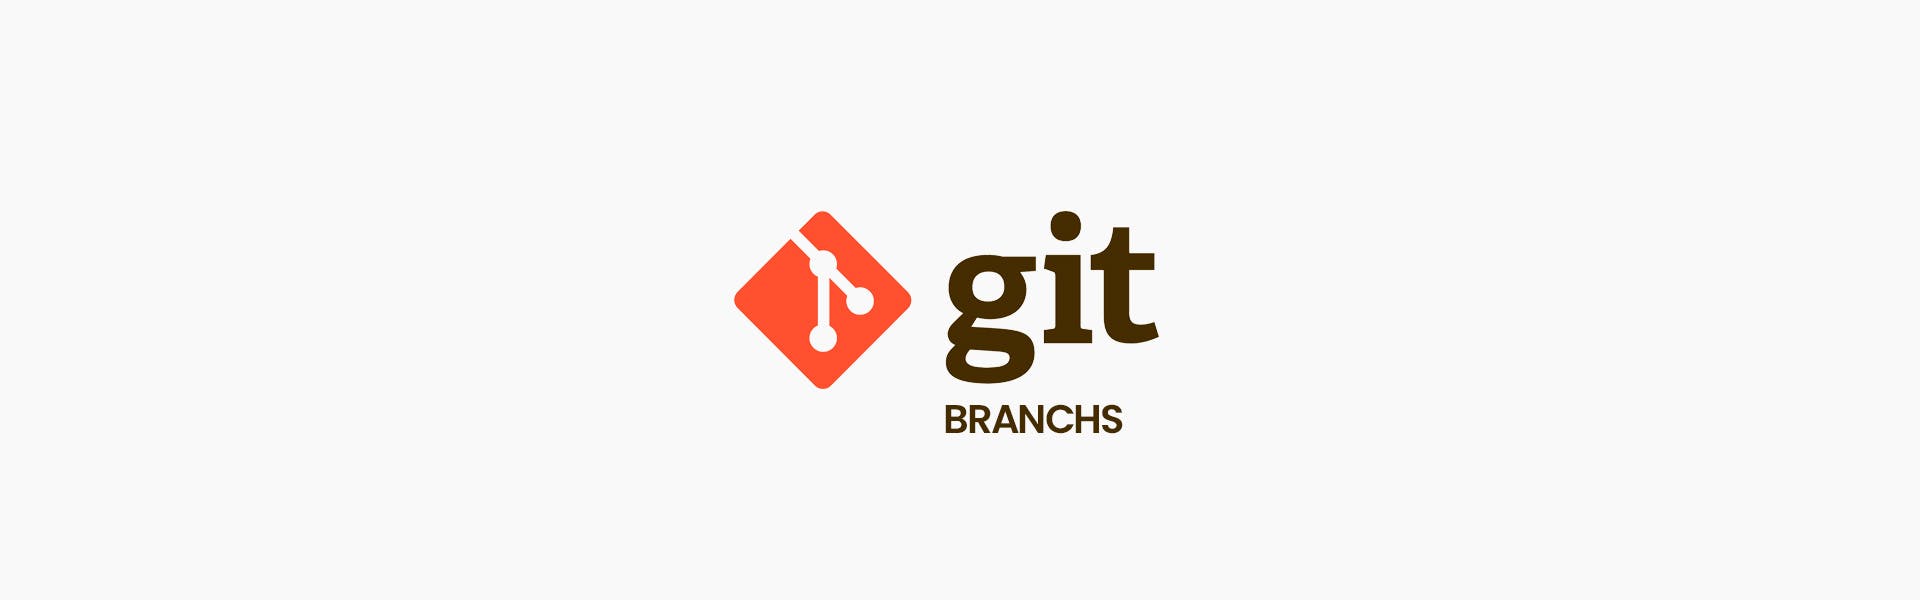 ¿Cómo borrar una rama o branch de Git en local y remoto?